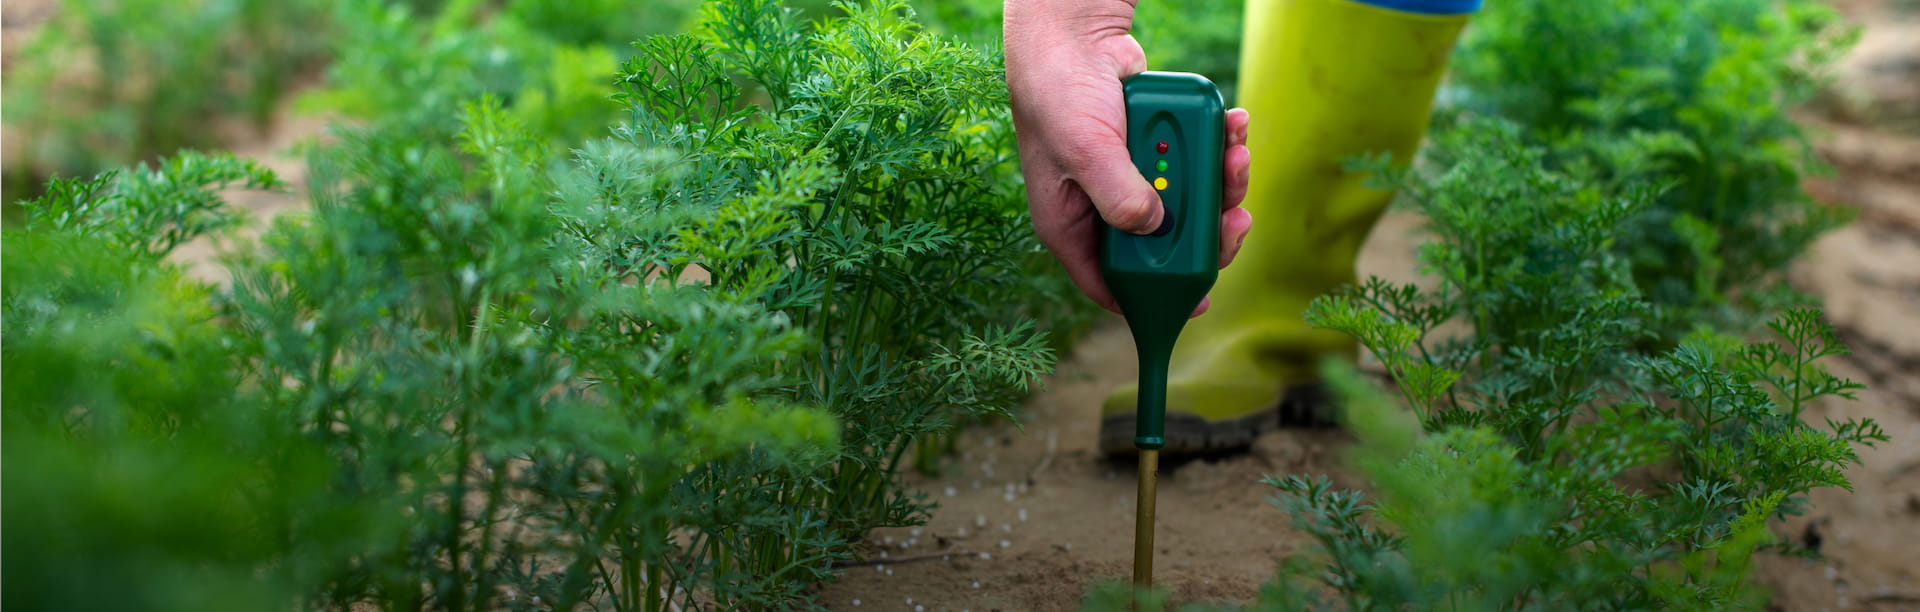 Plant Care Tools - De webwinkel voor al uw meetinstrumenten voor een gezonde tuin